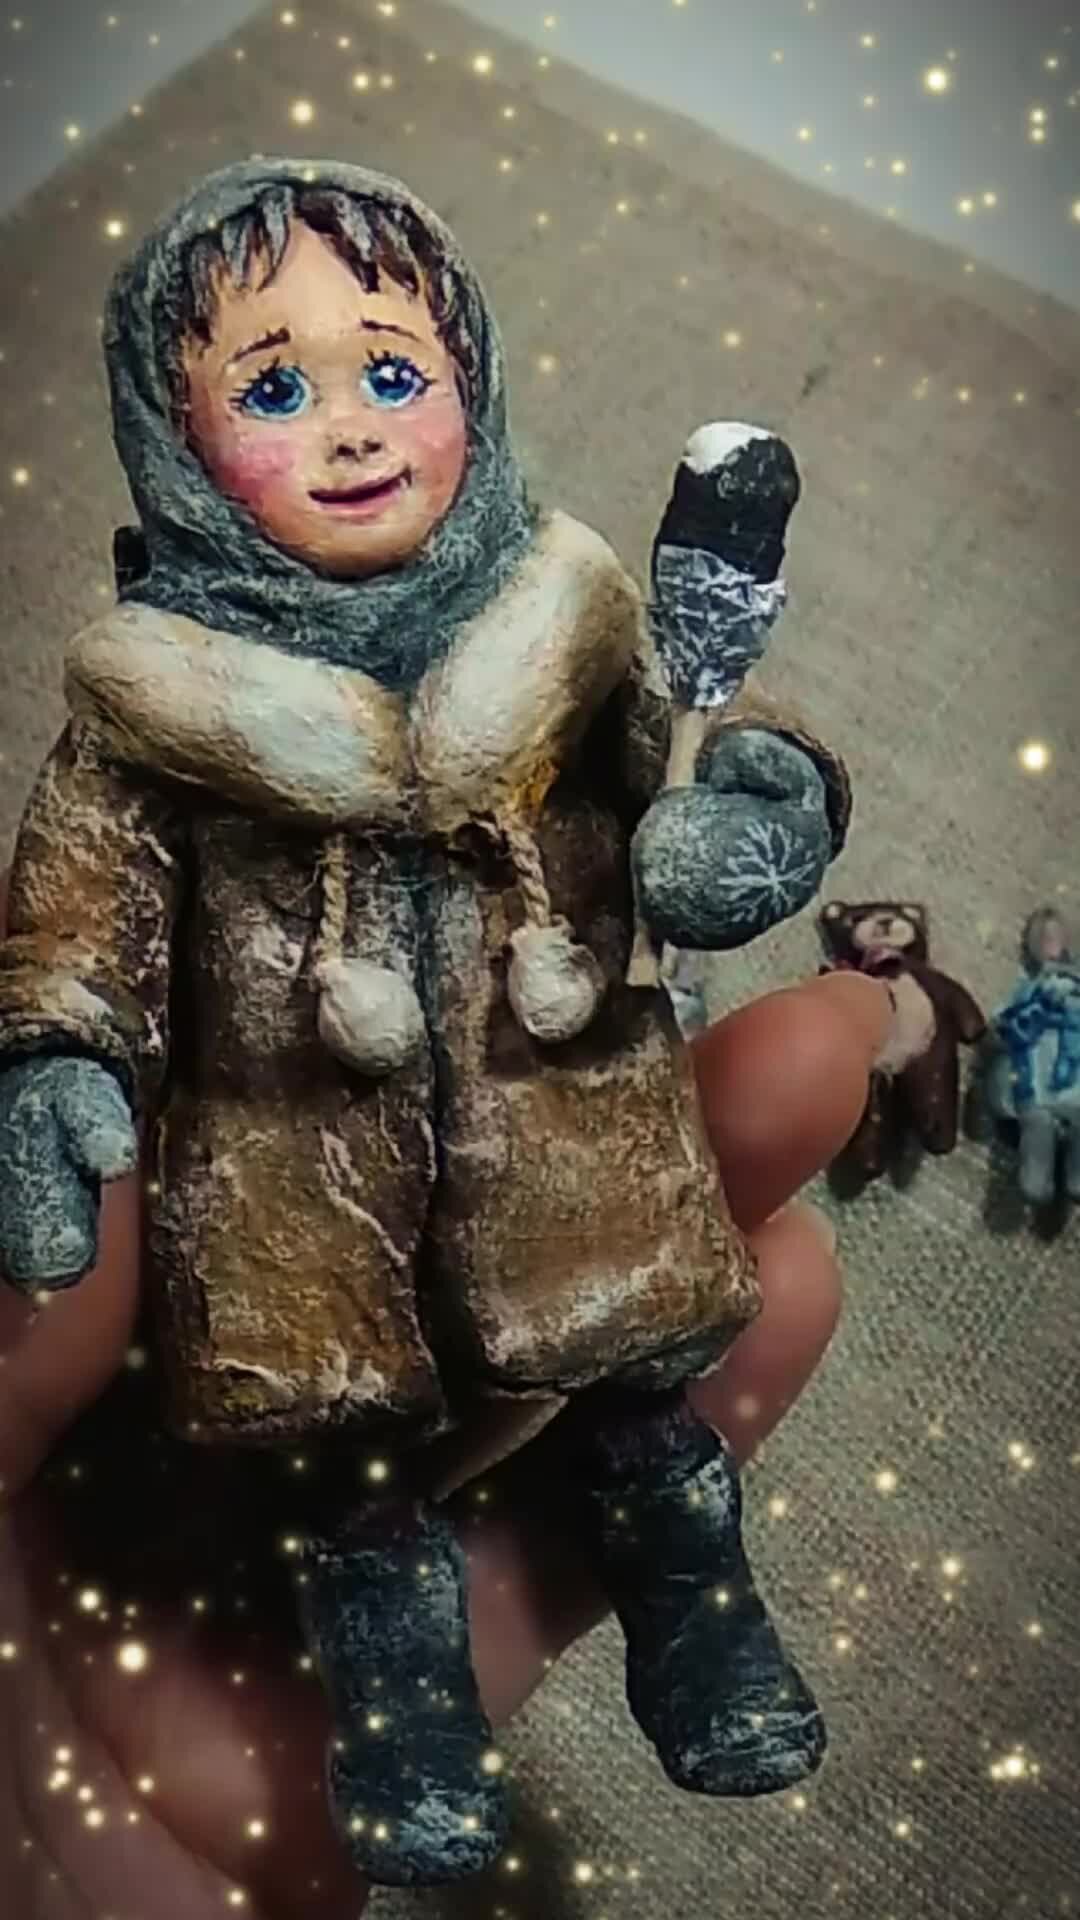 Купить куклы и аксессуары в интернет магазине вороковский.рф